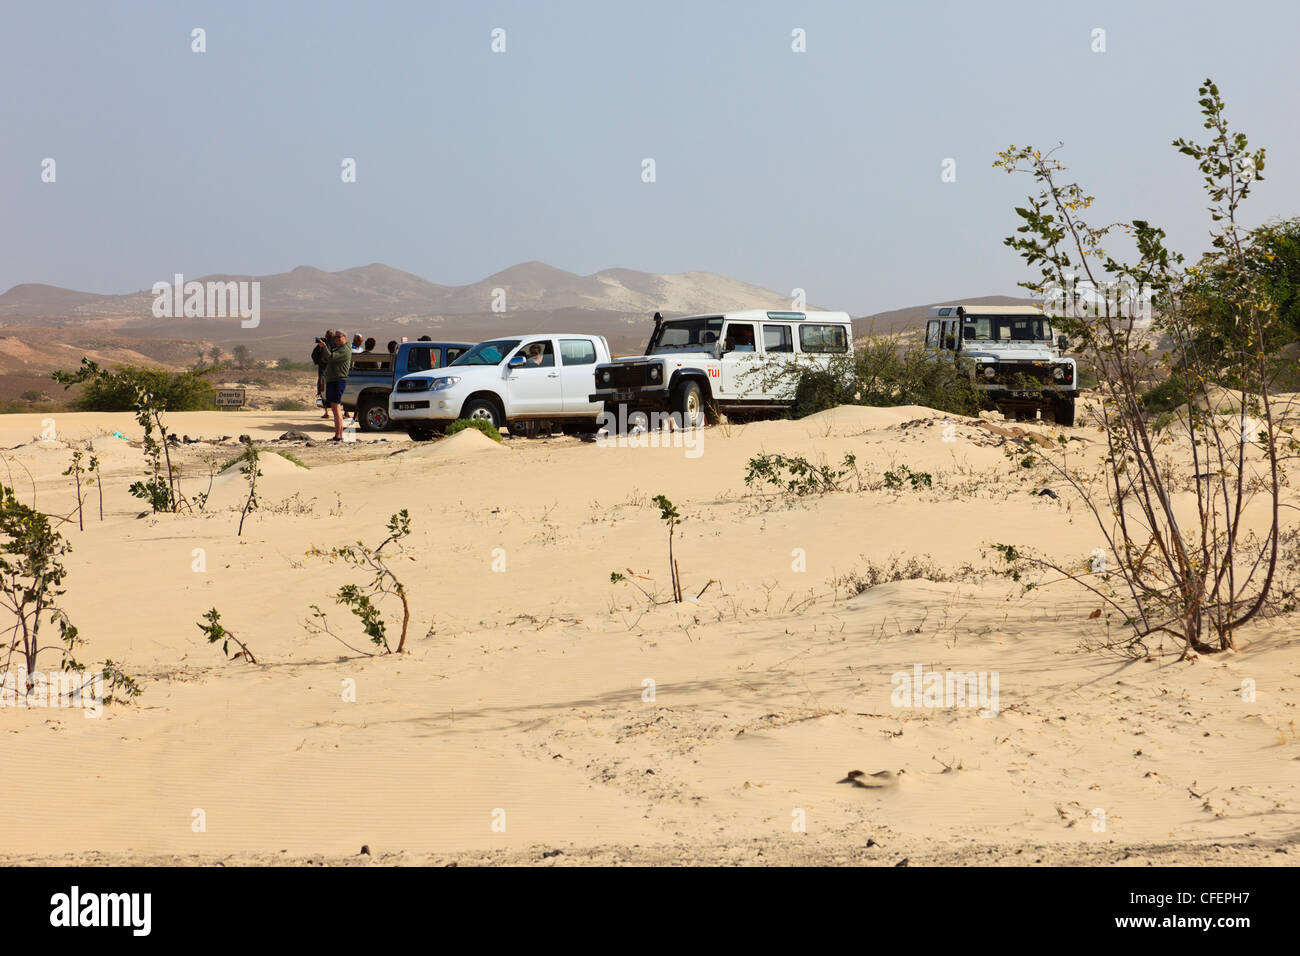 Deserto de Viana, Boa Vista, Kap Verde Inseln. Touristen in der Wüste auf einem Sightseeing-trip Stockfoto